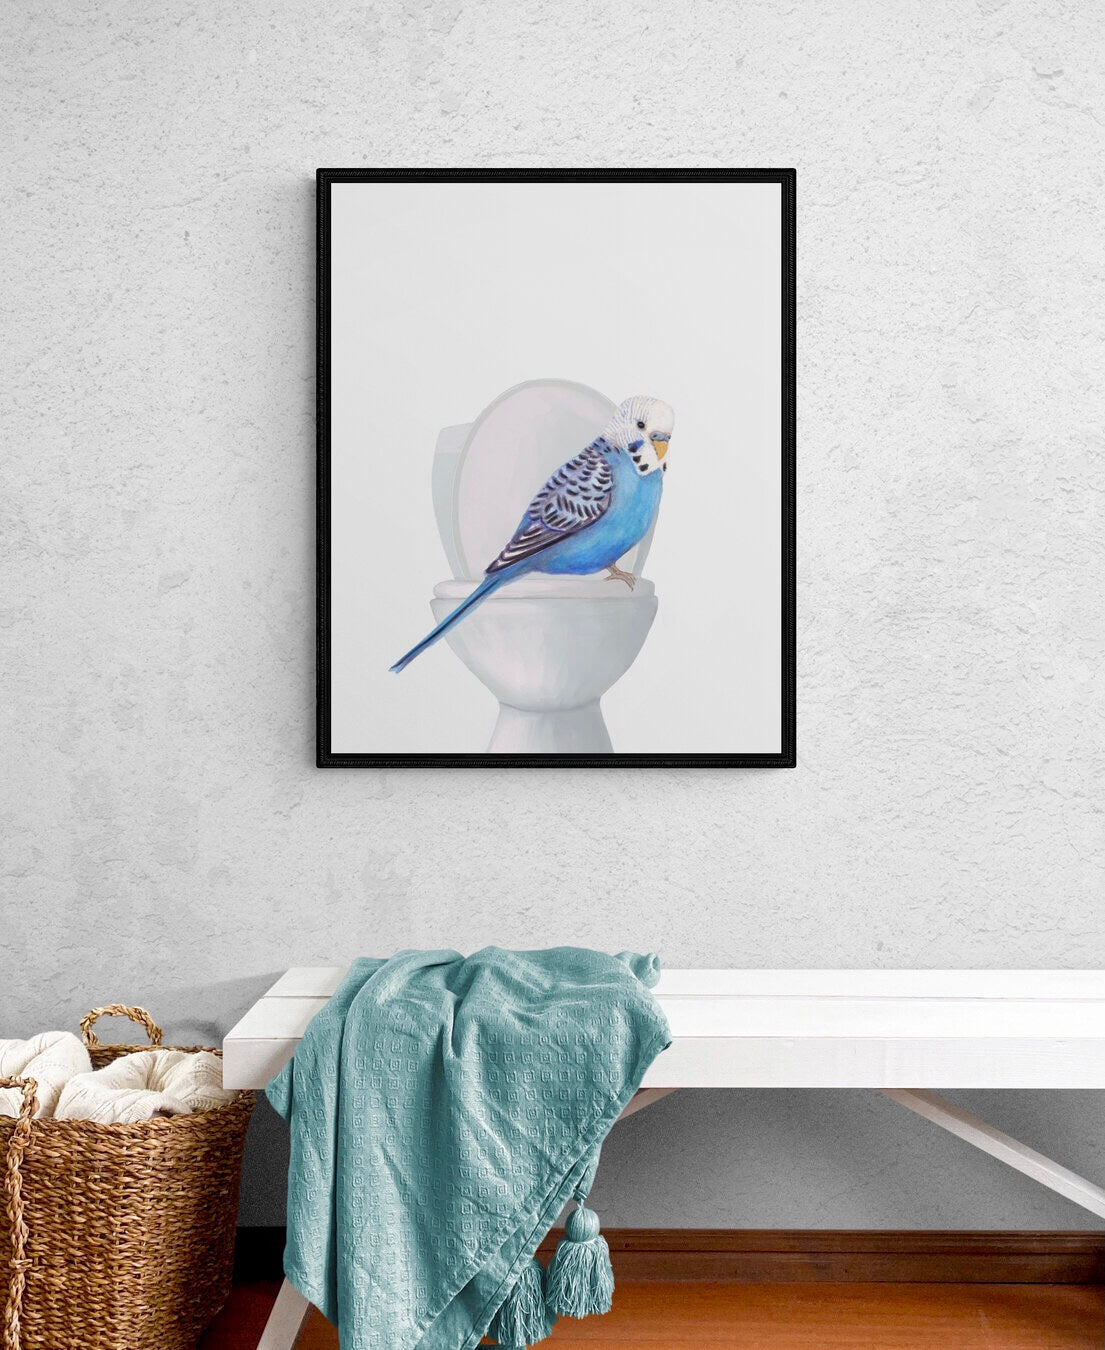 Blue Parakeet On Toilet Print